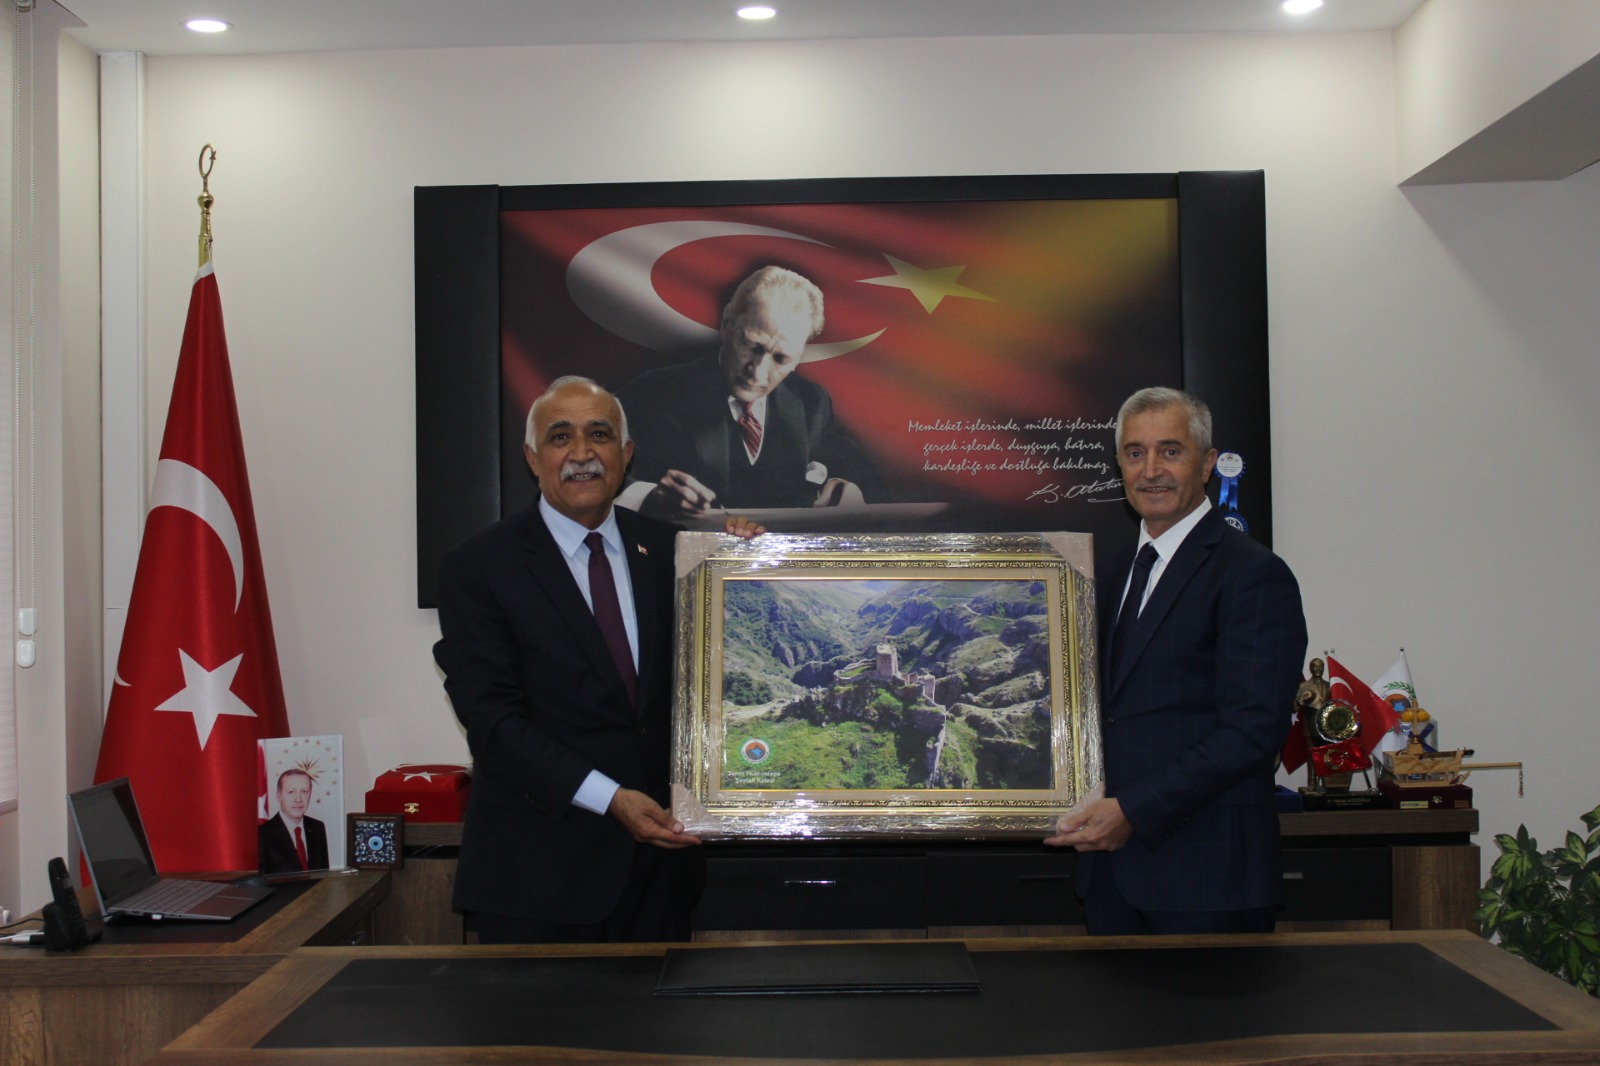 Yeni Kardeş Belediyemiz Gaziantep Şahinbey Belediyesi Katkılarınız Için Teşekkür Ederiz.